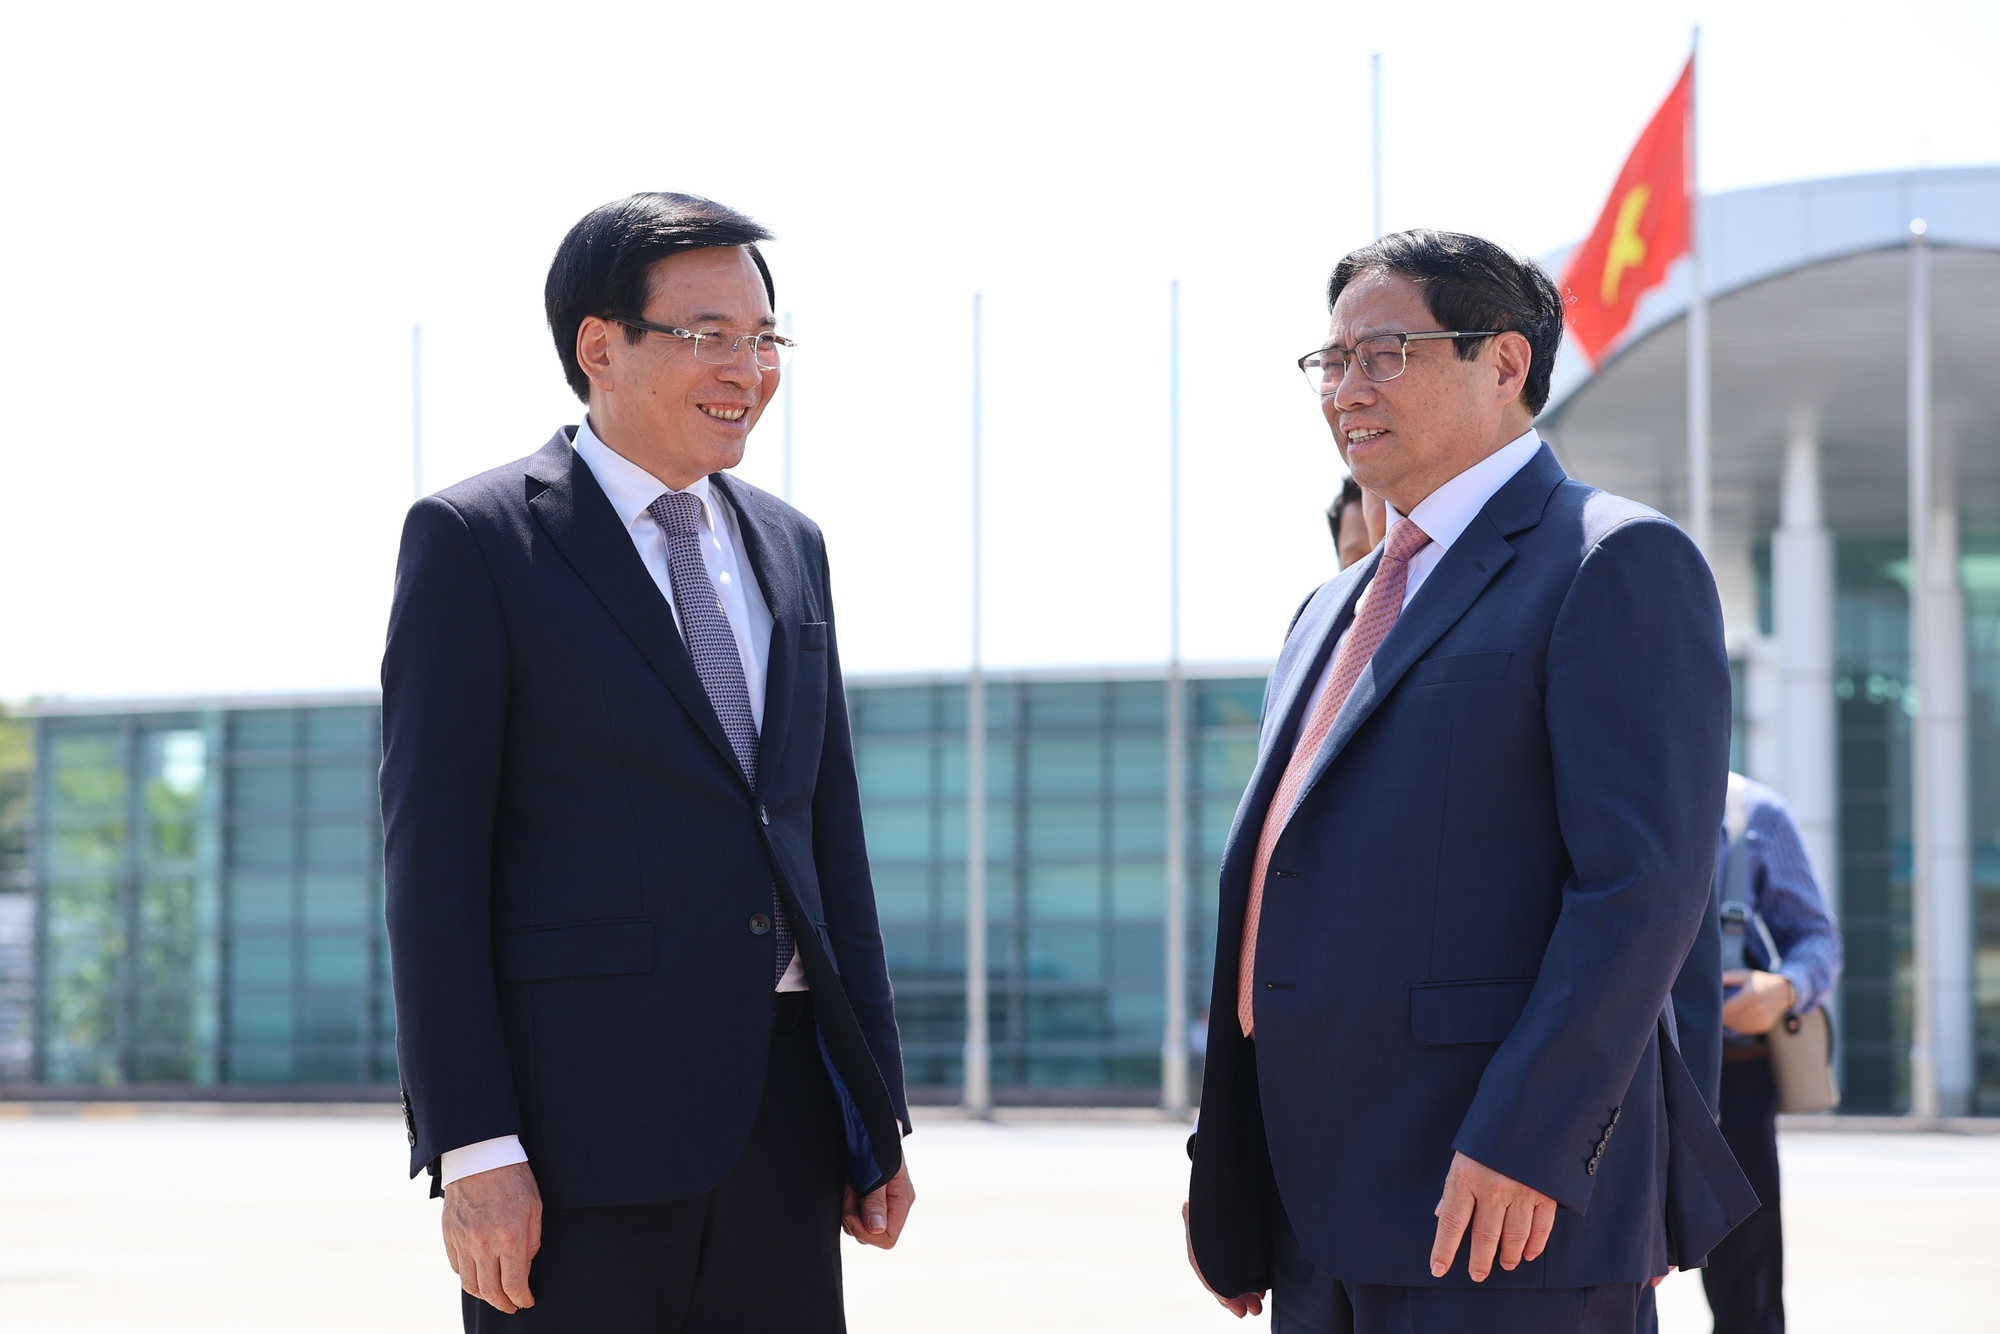 Bộ trưởng, Chủ nhiệm Văn phòng Chính phủ Trần Văn Sơn tiễn Thủ tướng lên đường dự Hội nghị cấp cao ASEAN-GCC và thăm Saudi Arabia - Ảnh: VGP/Nhật Bắc